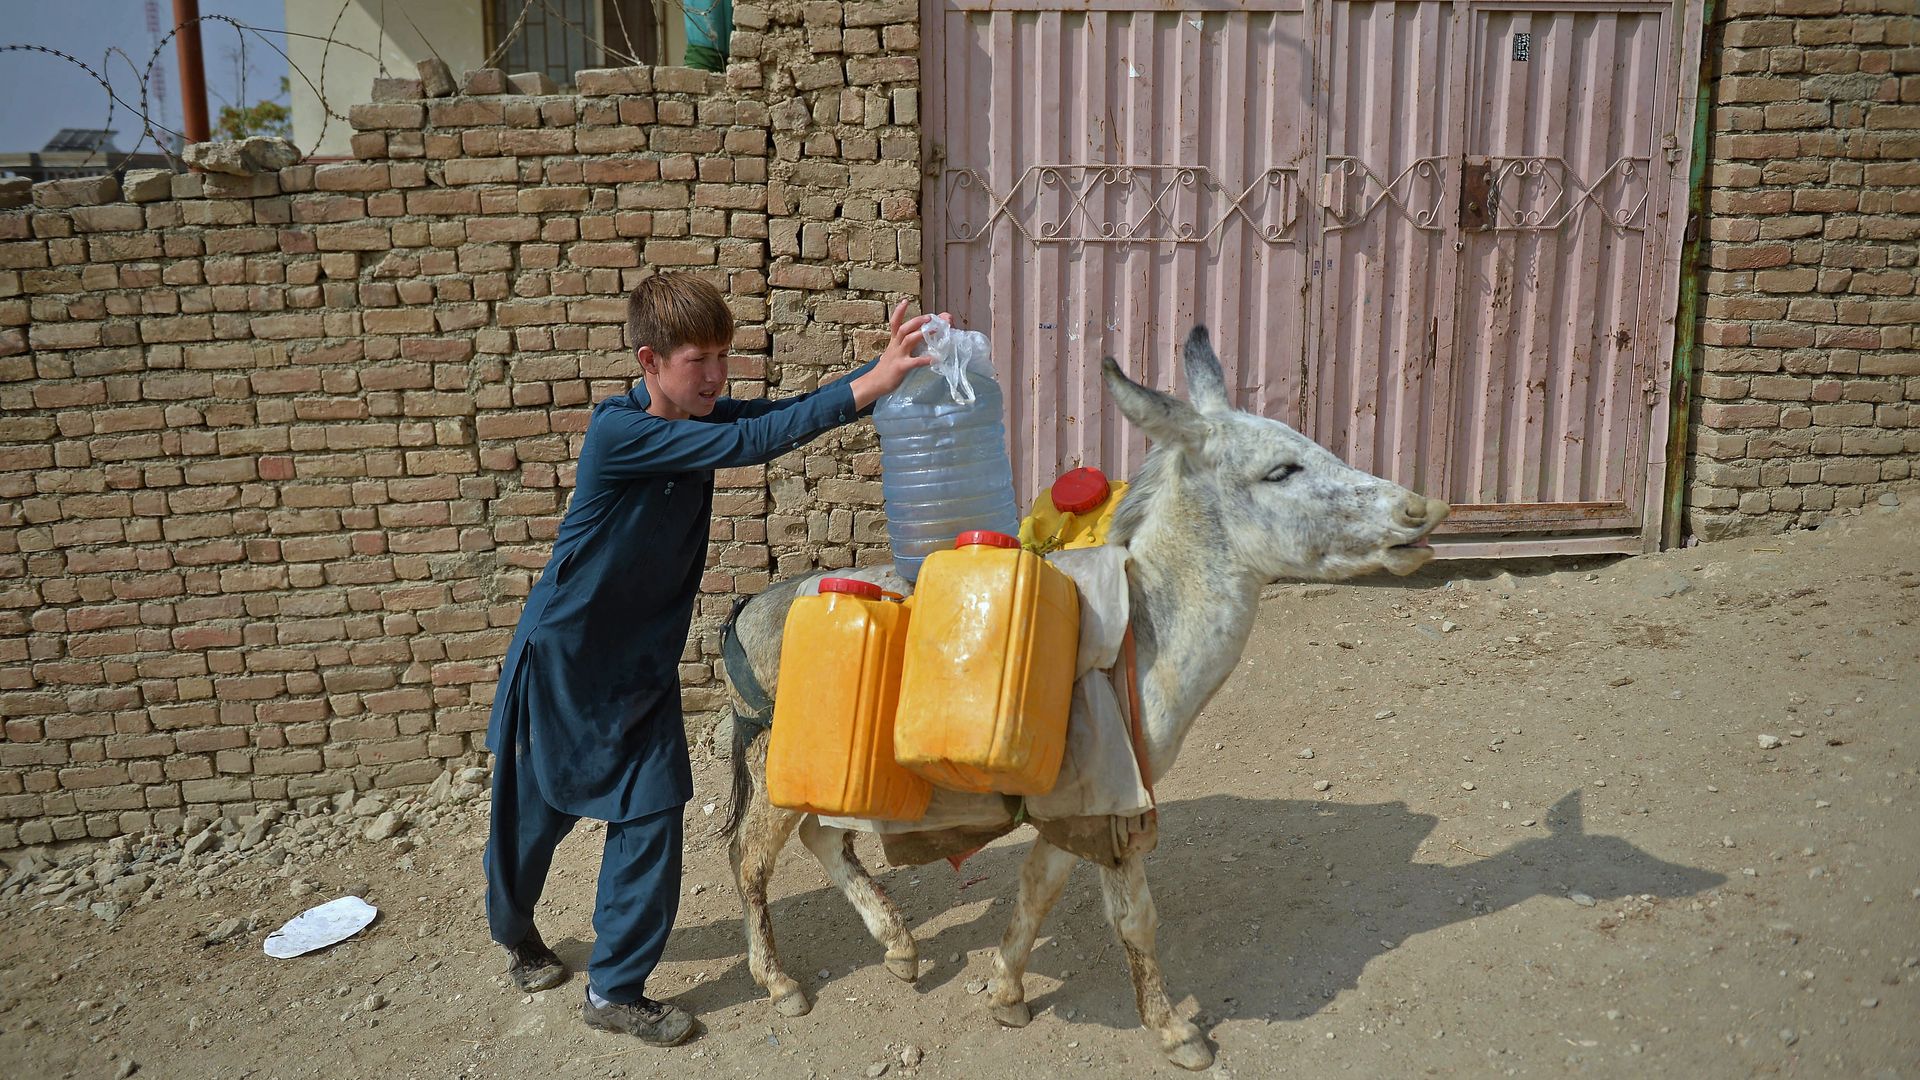 A boy loads water onto a donkey in Kabul.